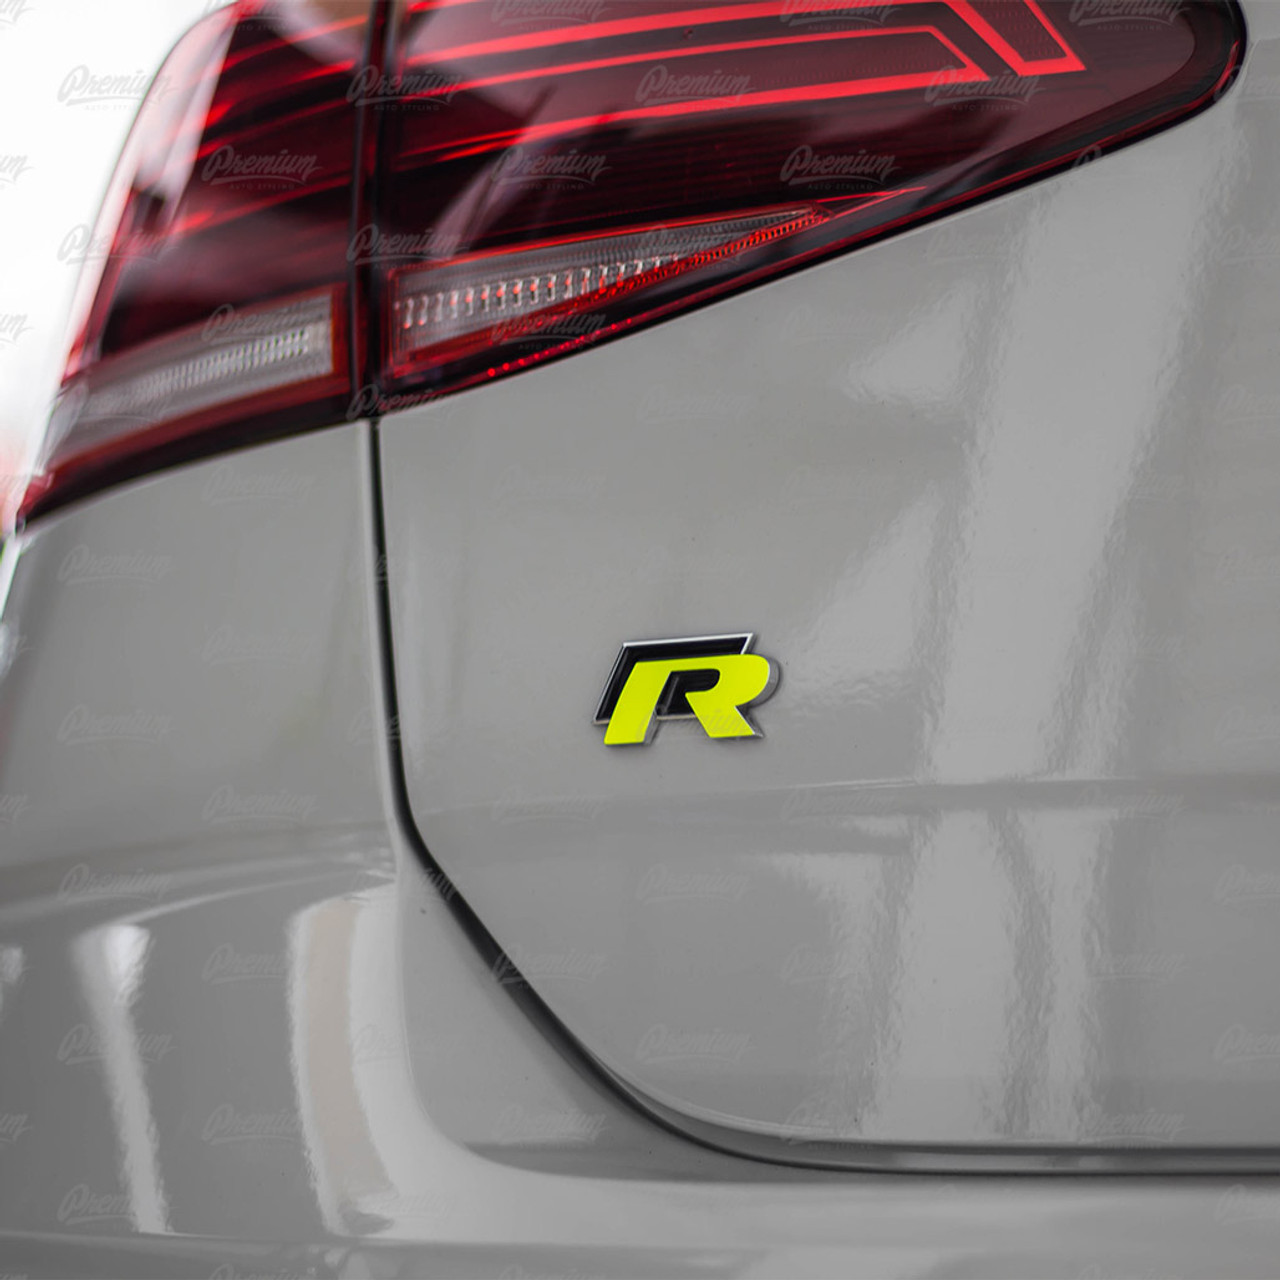 2015-2019 Volkswagen Golf R  R emblem overlay set - Premium Auto Styling